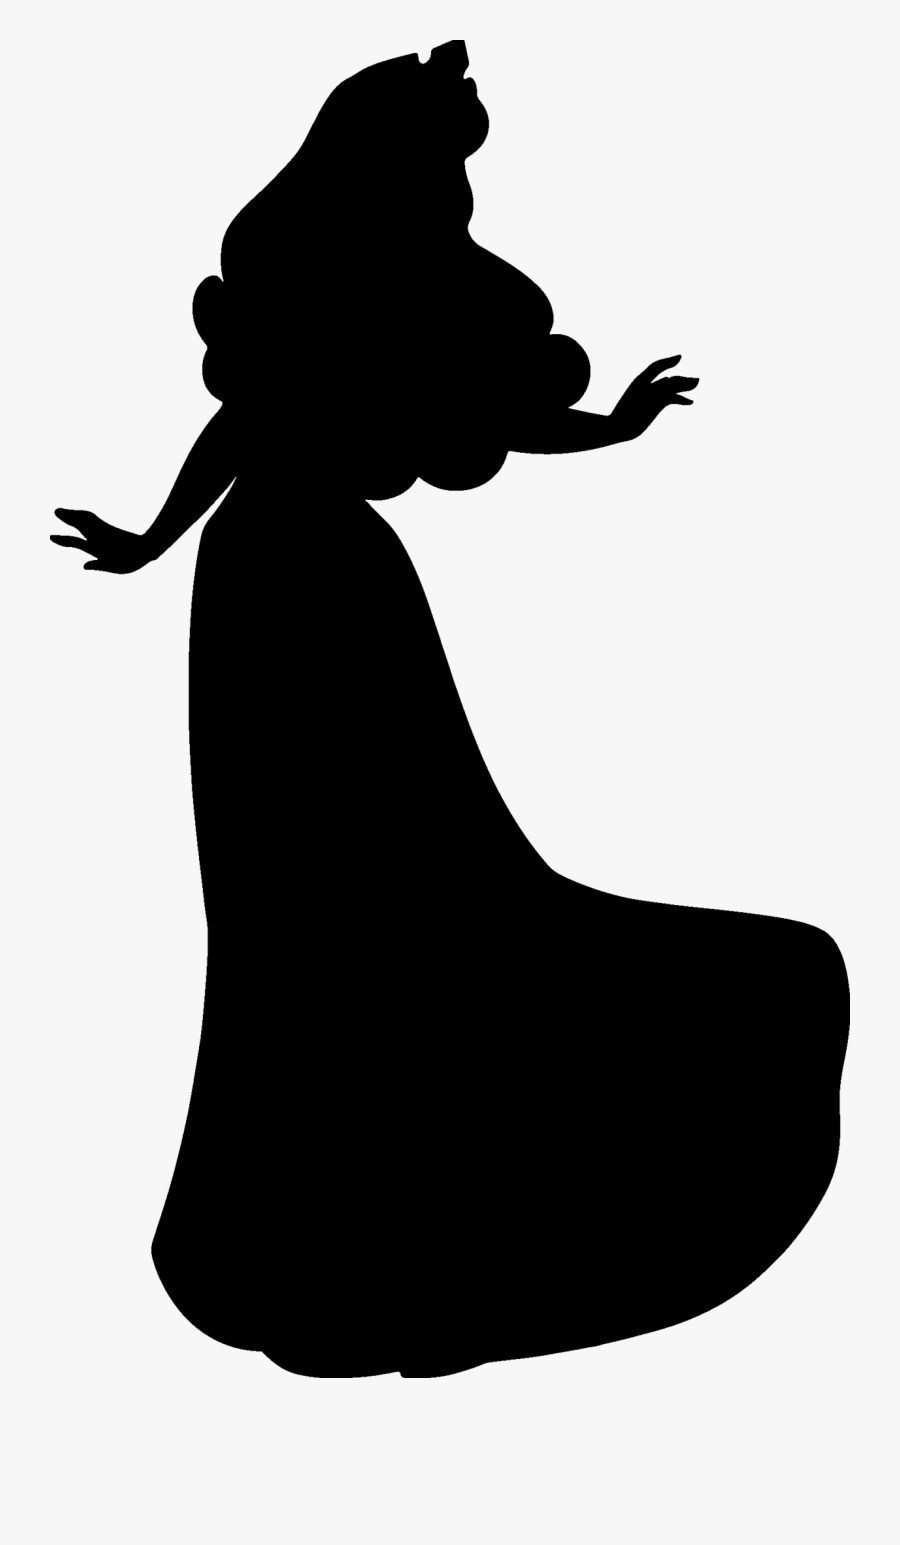 Download Belle Silhouette Printable At Getdrawings - Disney ...